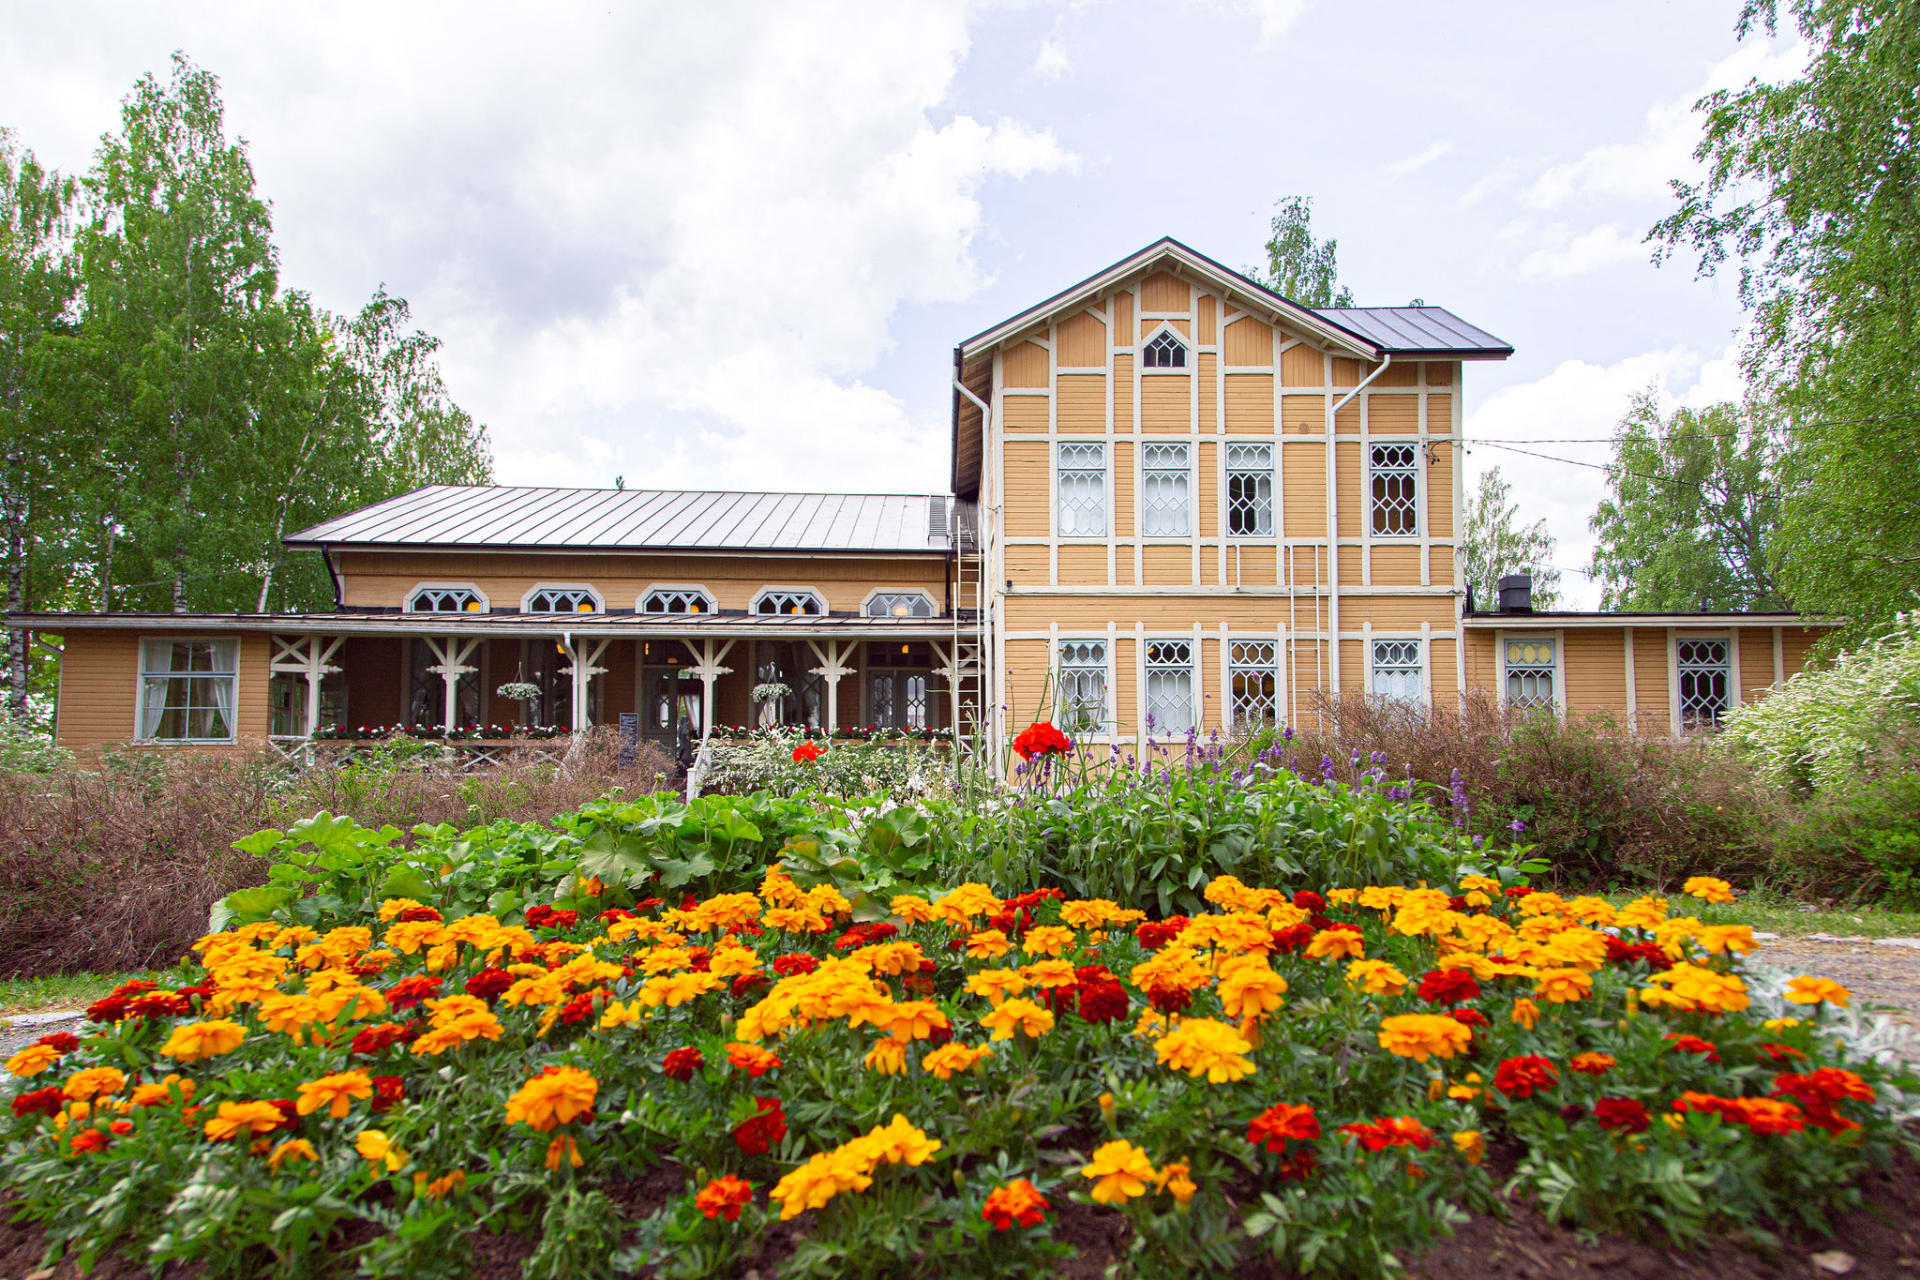 Ravintola Viikinsaari operates in historical mansion